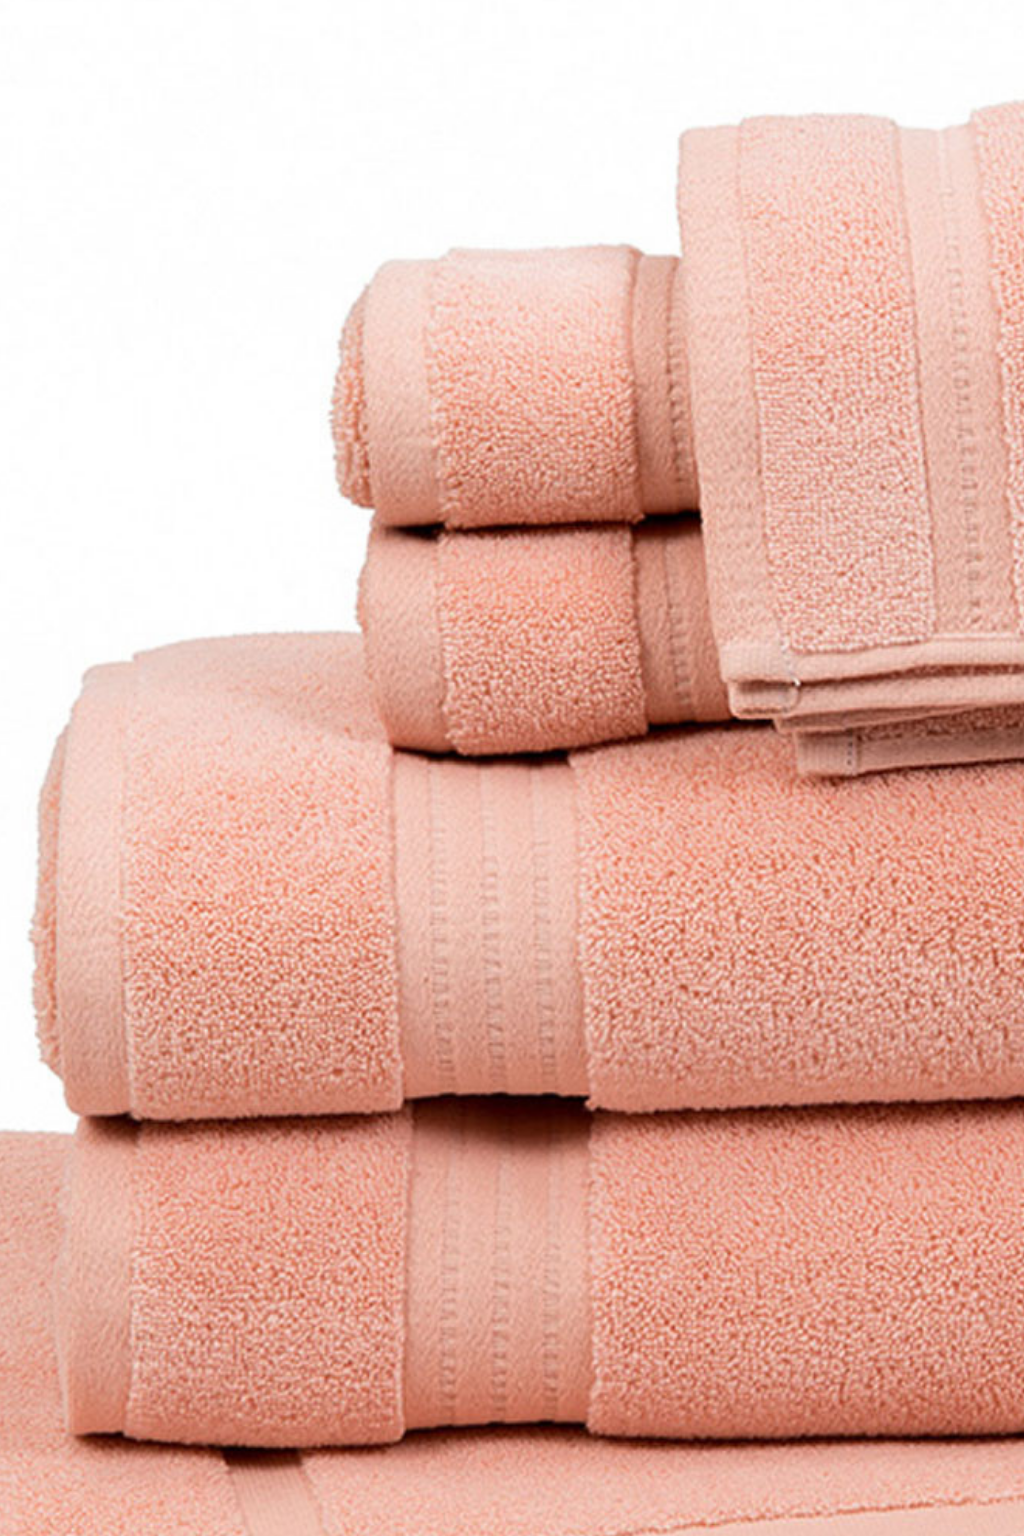 http://pure-fiber.com/cdn/shop/products/zero-twist-bath-towel-set-rose.png?v=1617392180